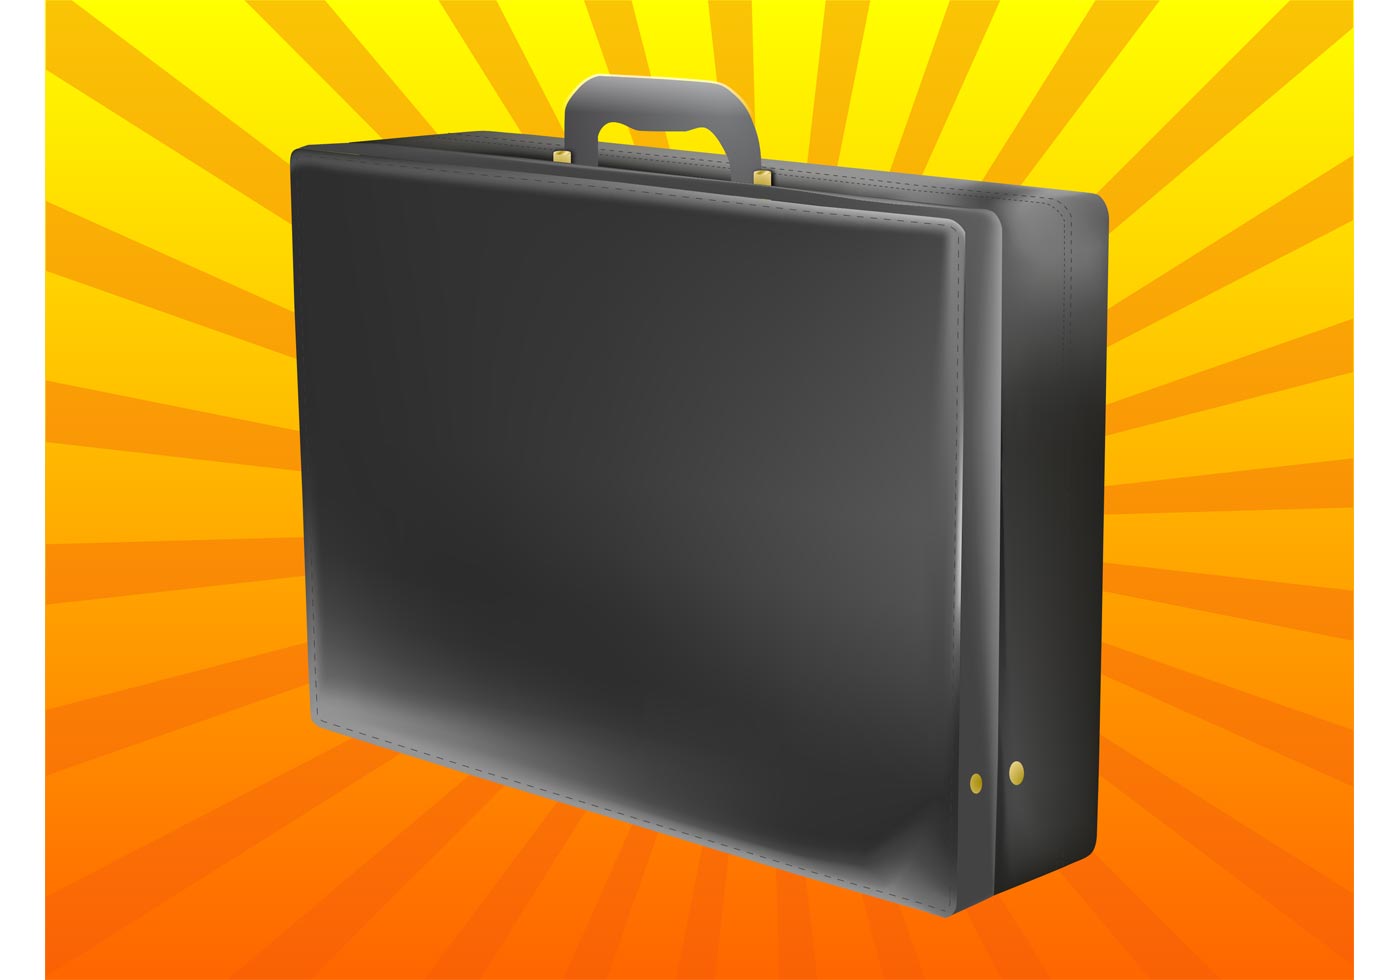 briefcase vector